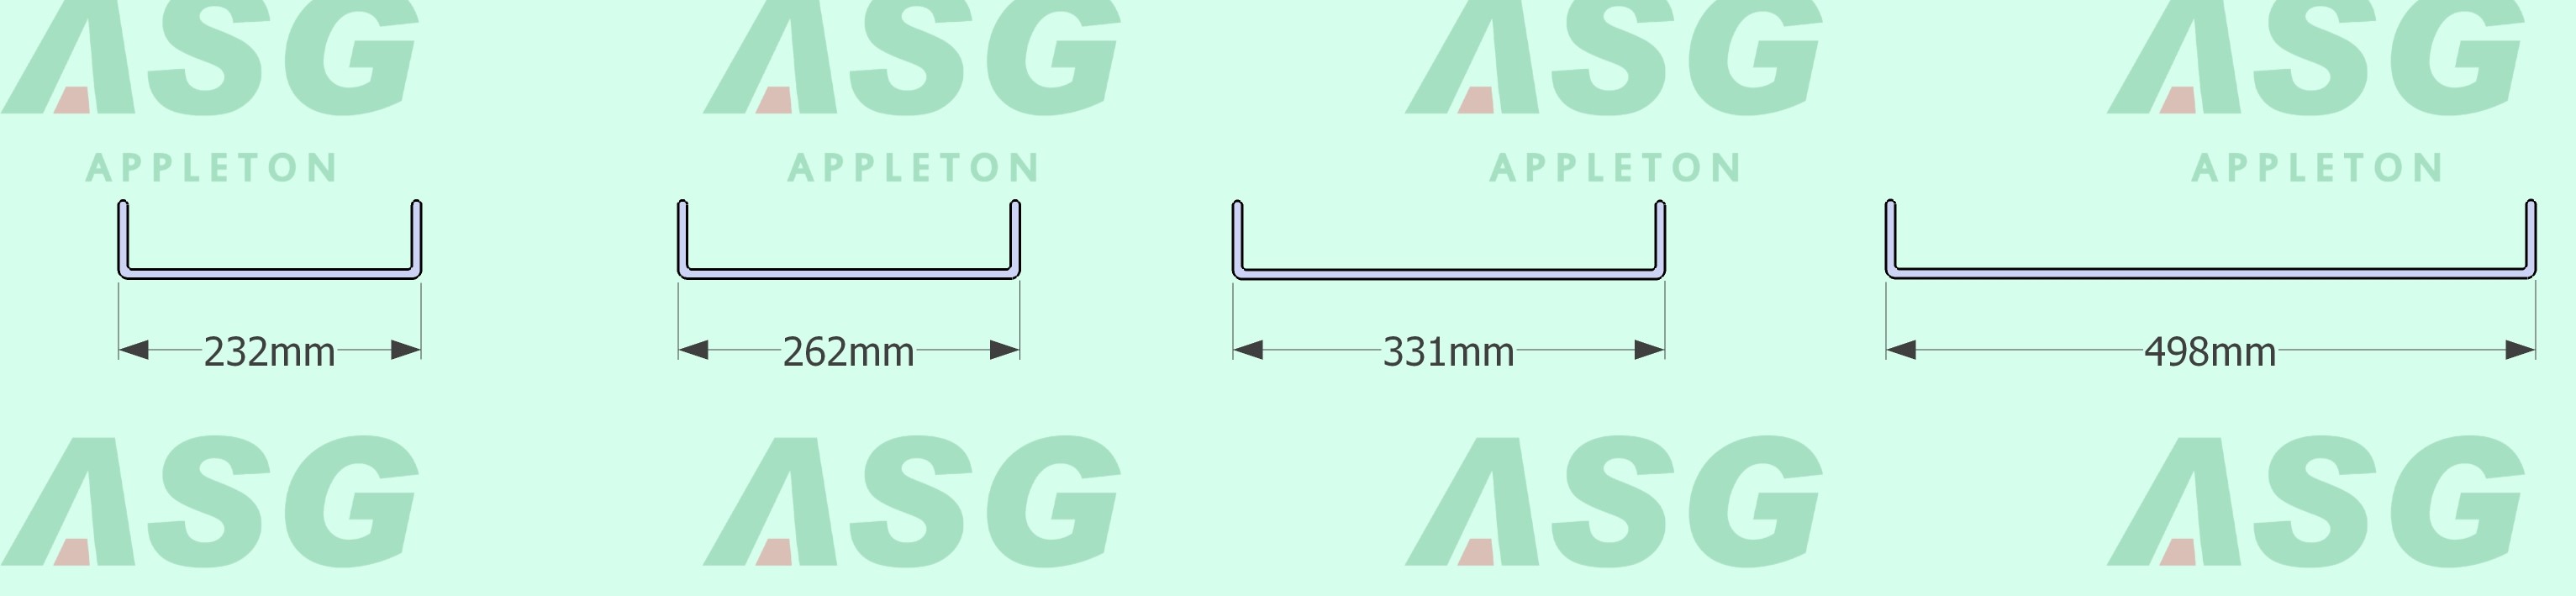 U型玻璃标准宽度截面图